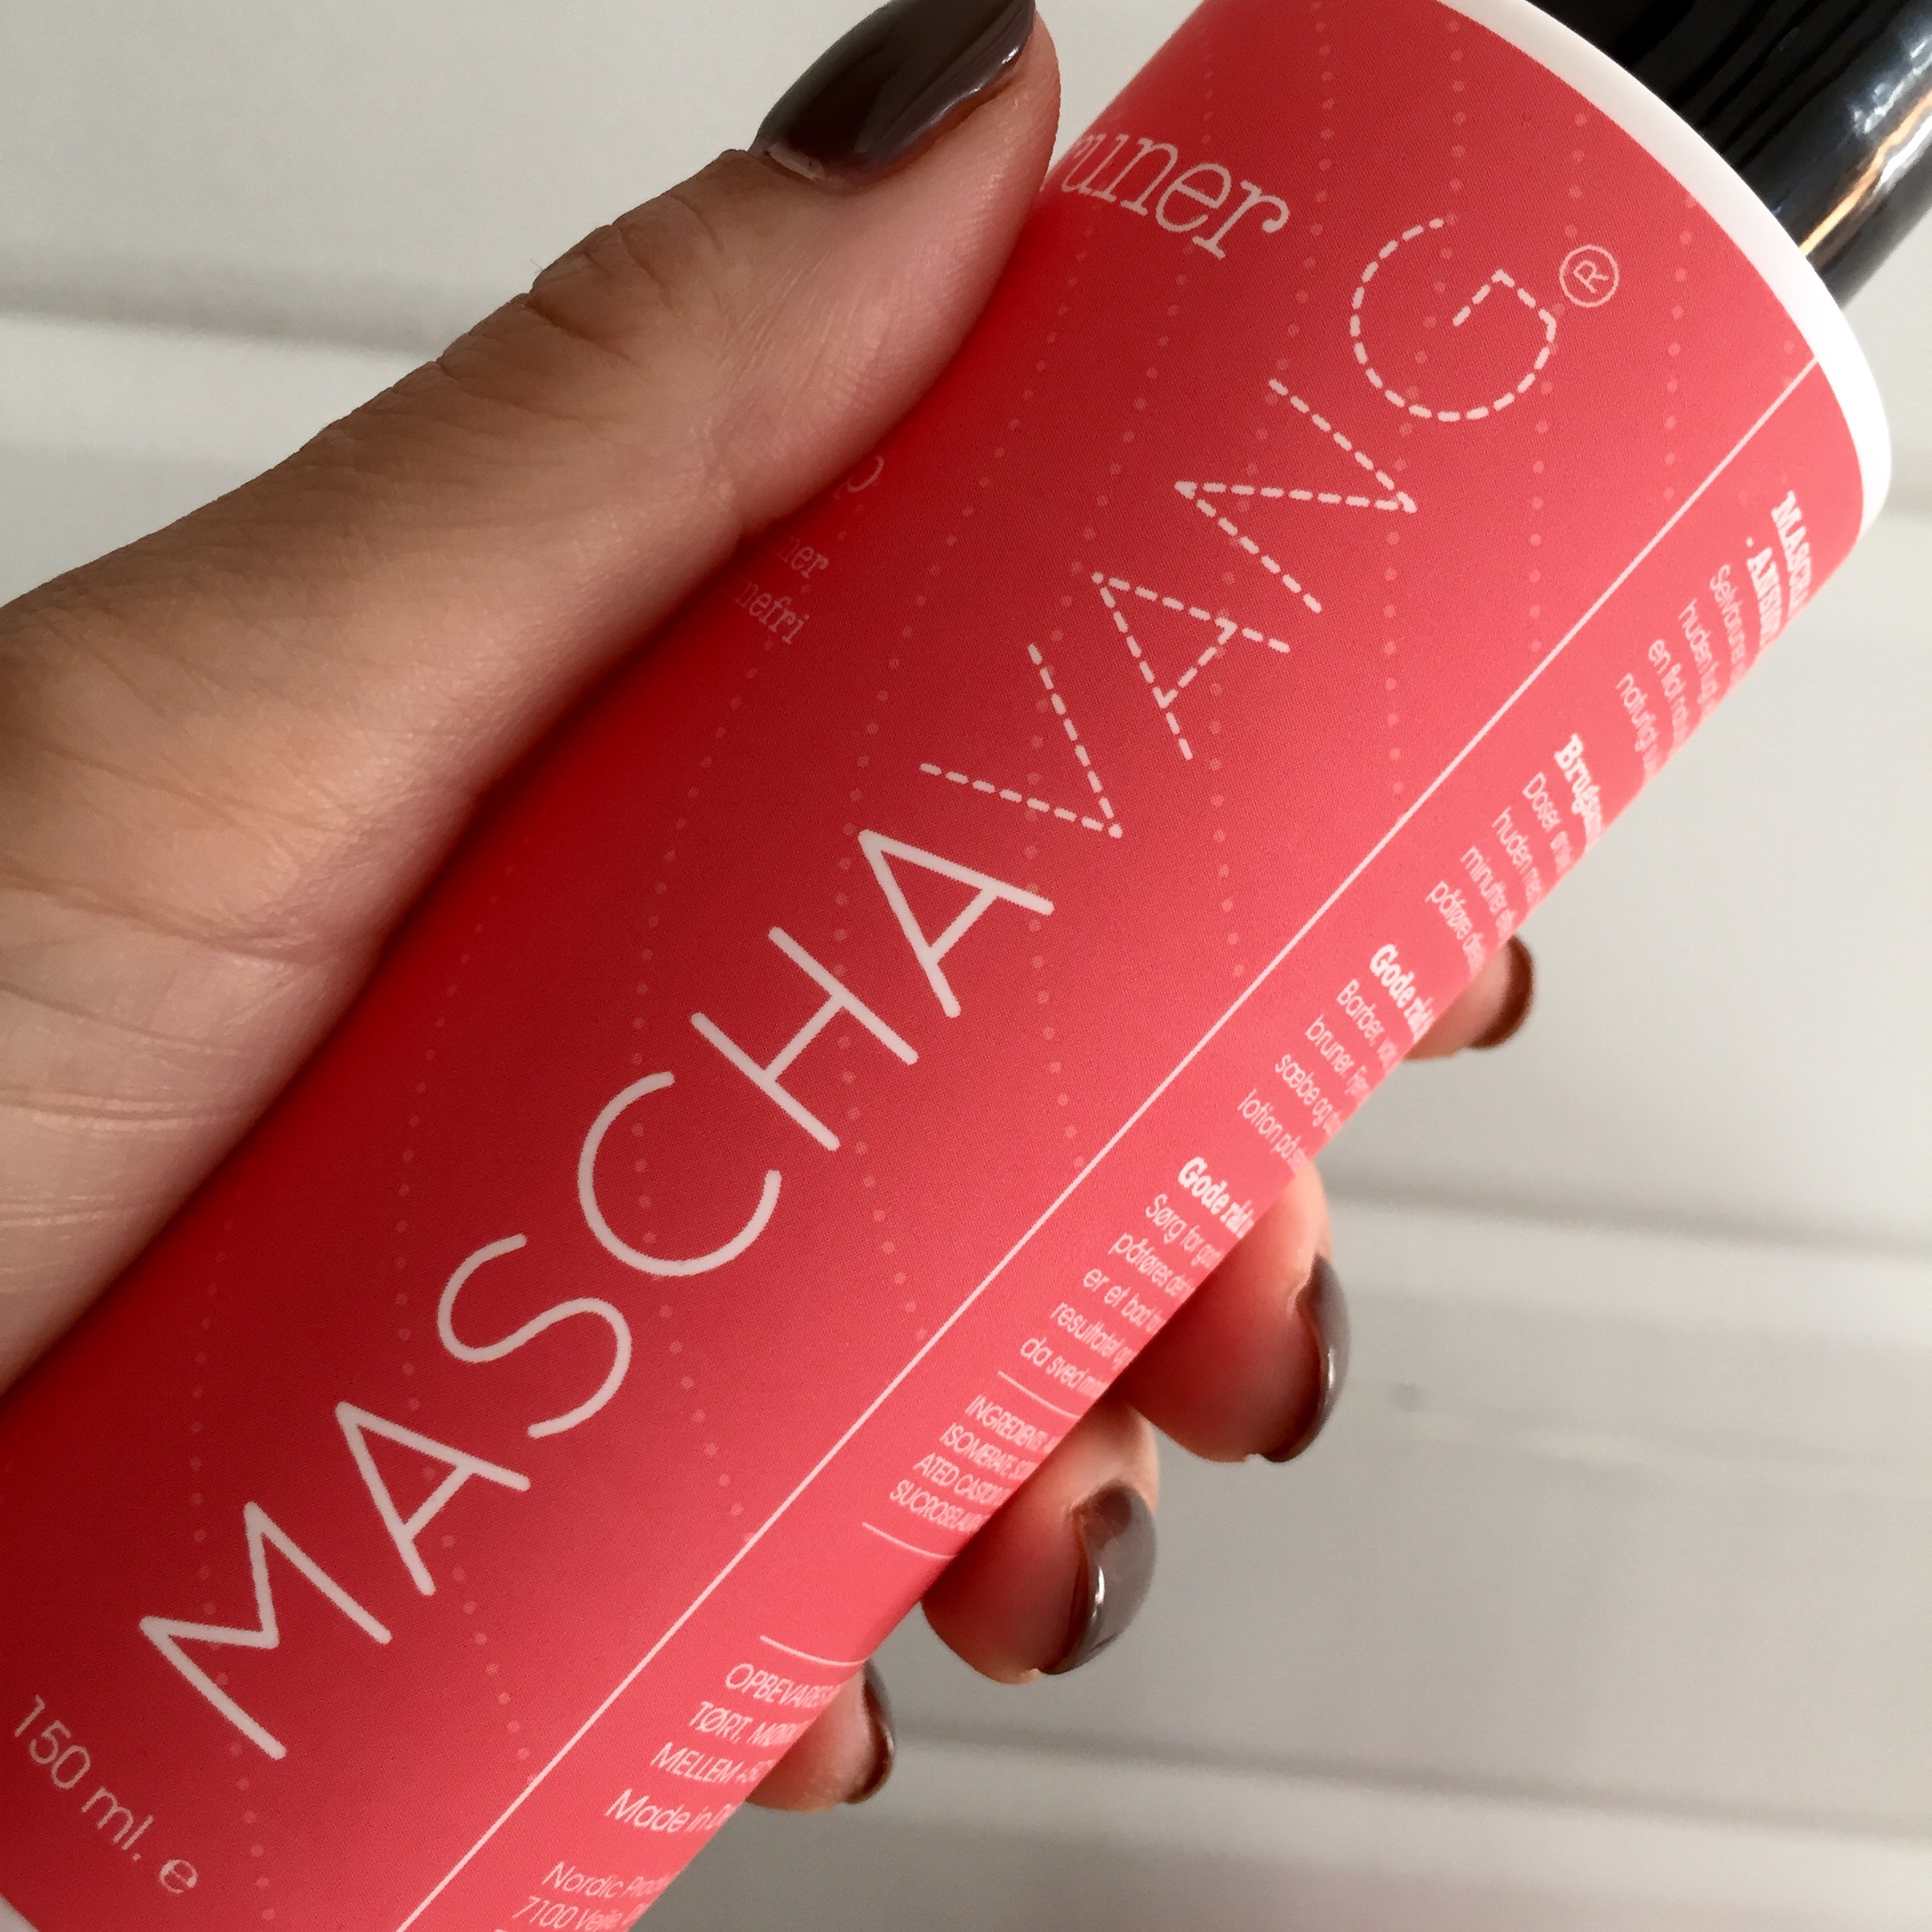 Wow salut idiom NYT: MASCHA VANG selvbrunerserie | Daglig Blog | Mascha Vang